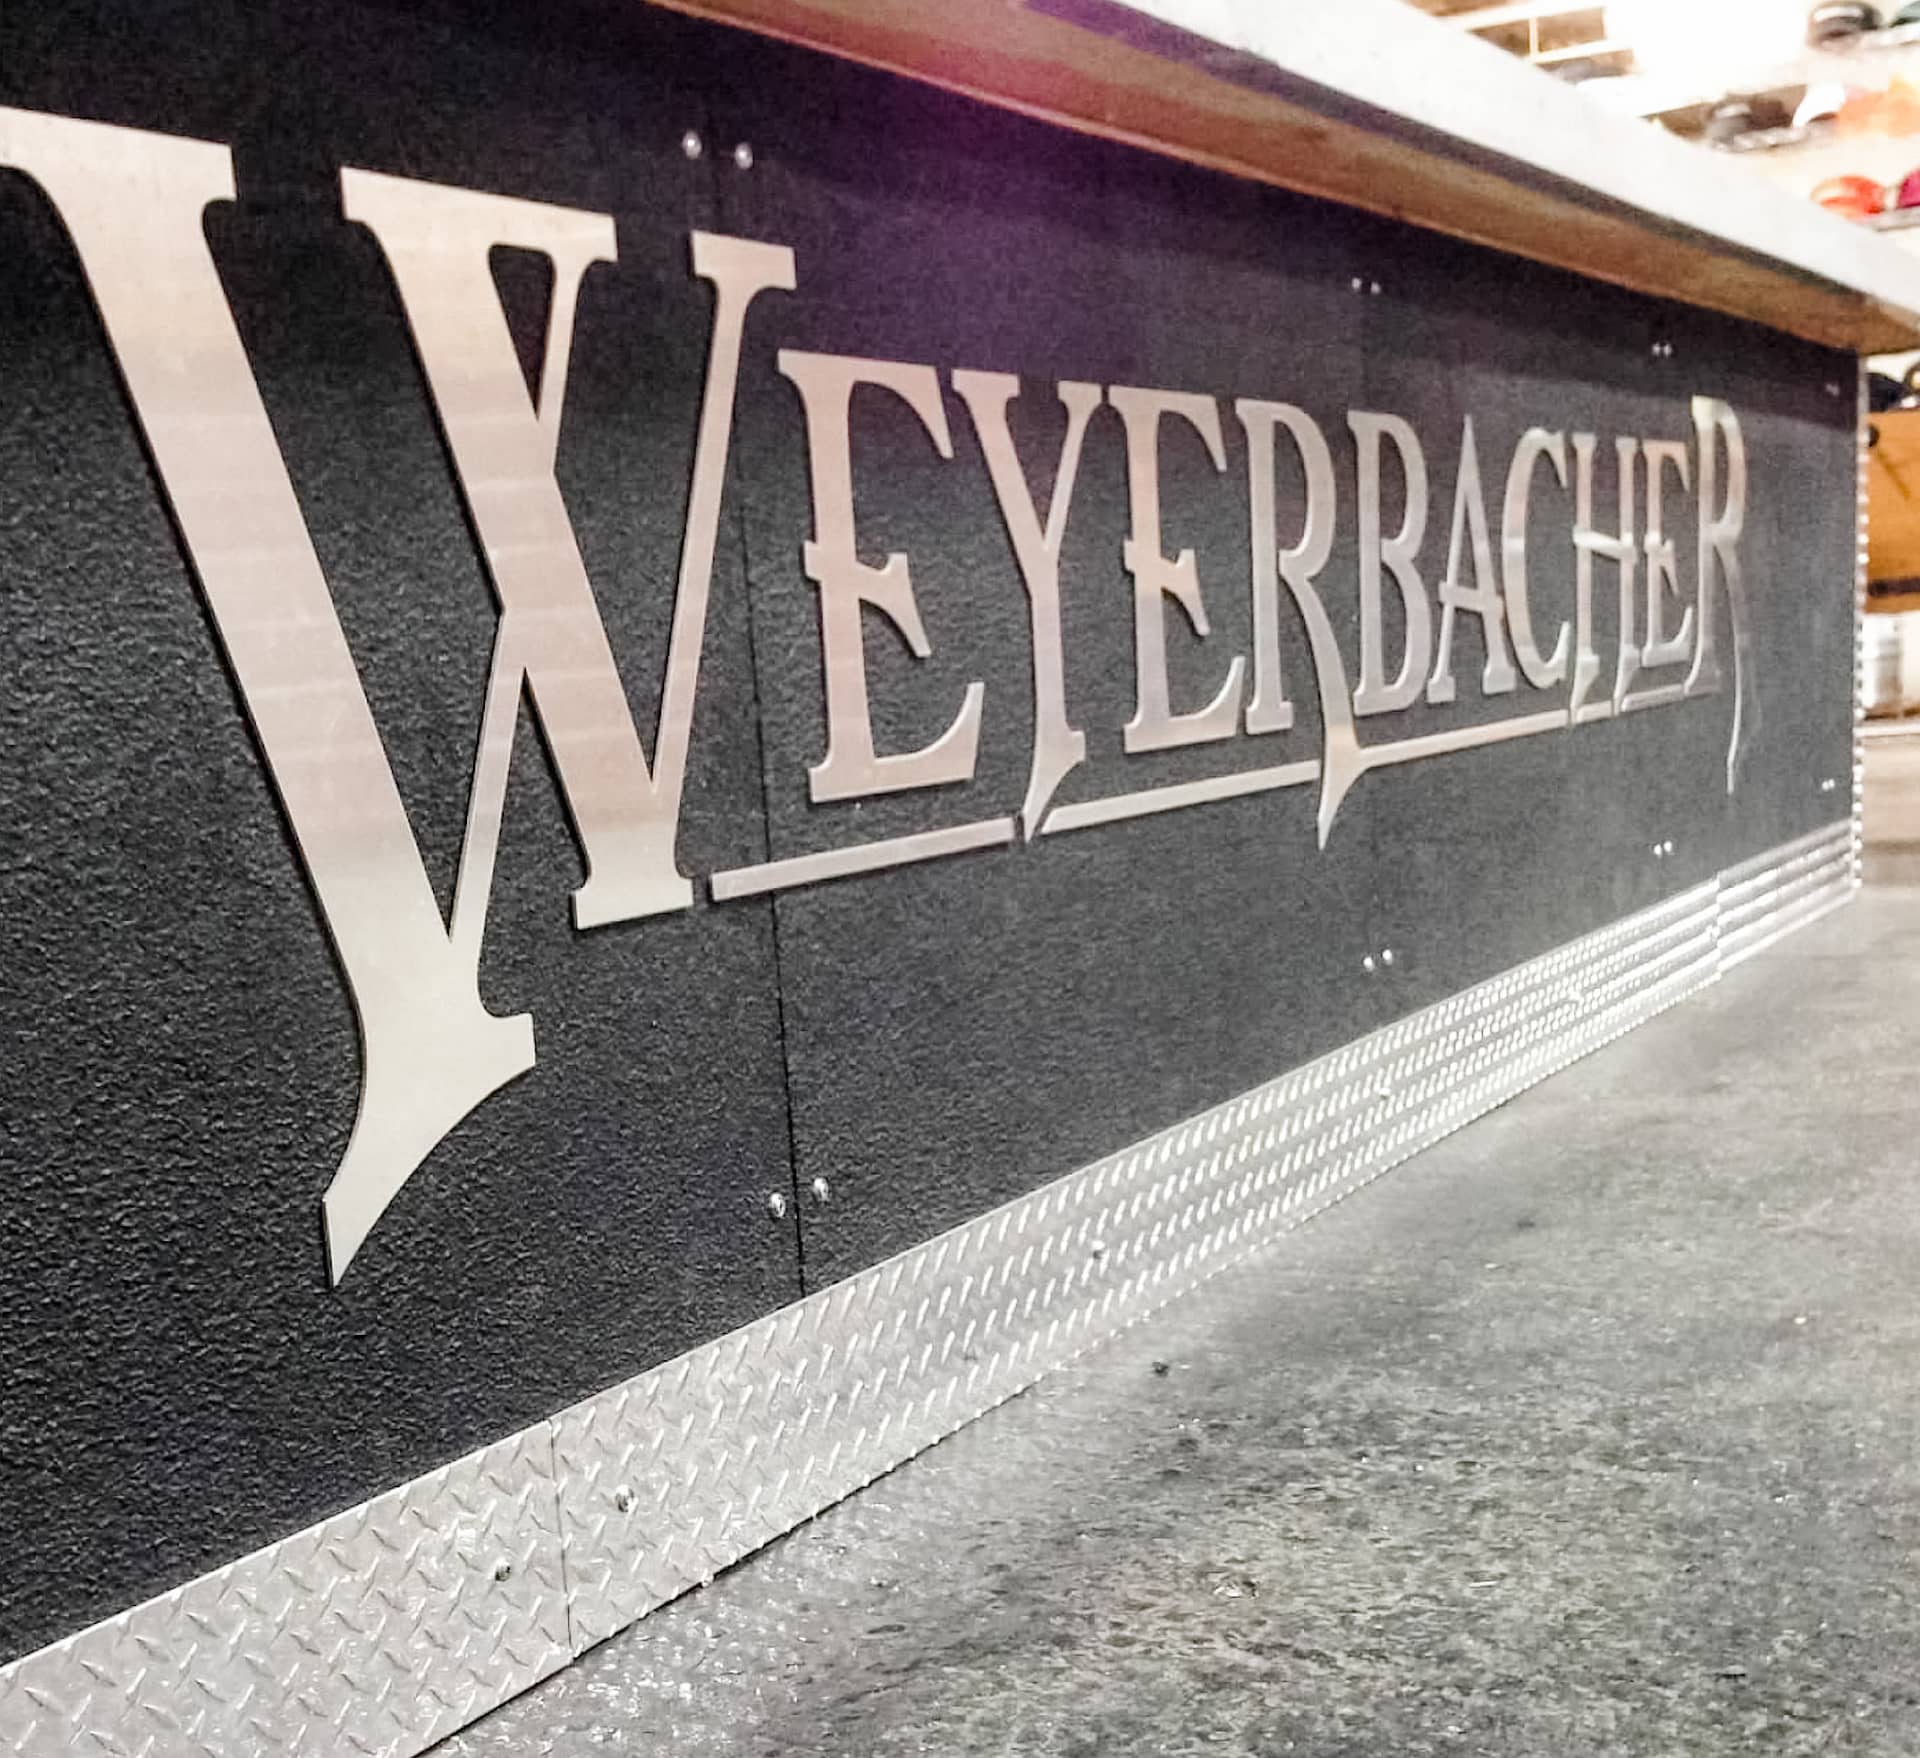 Bar sign that Weyerbacher